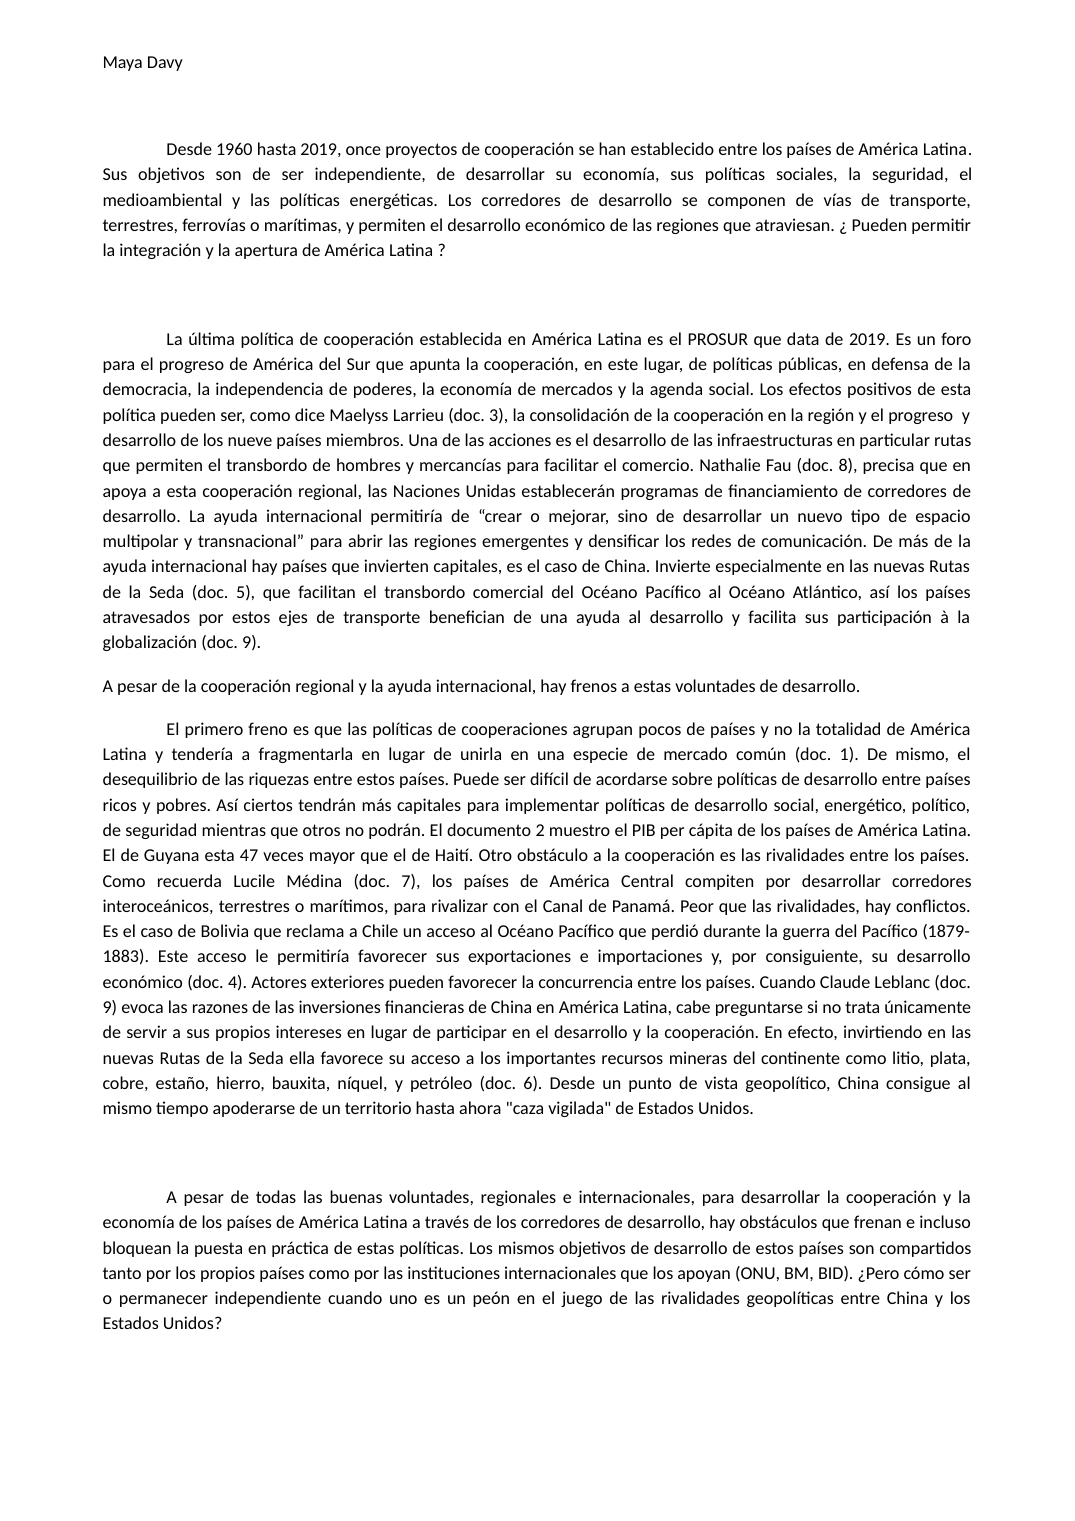 Prévisualisation du document ¿ Pueden permitirla integración y la apertura de América Latina ?